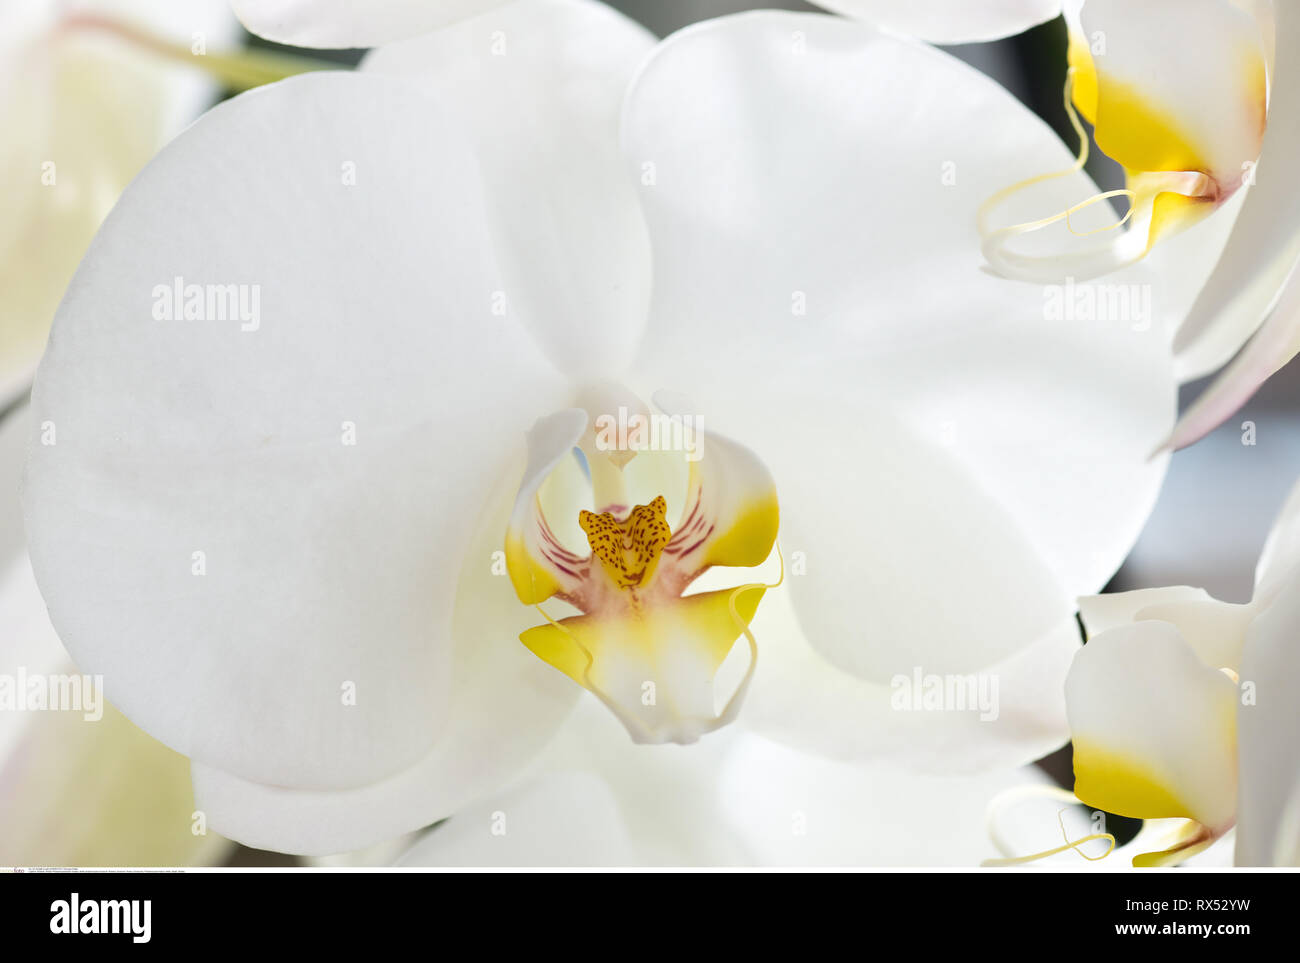 La botanica, bianco phalaenopsis blossom, attenzione! Per Greetingcard-Use / Postcard-Use nei Paesi di lingua tedesca talune restrizioni possono applicare Foto Stock